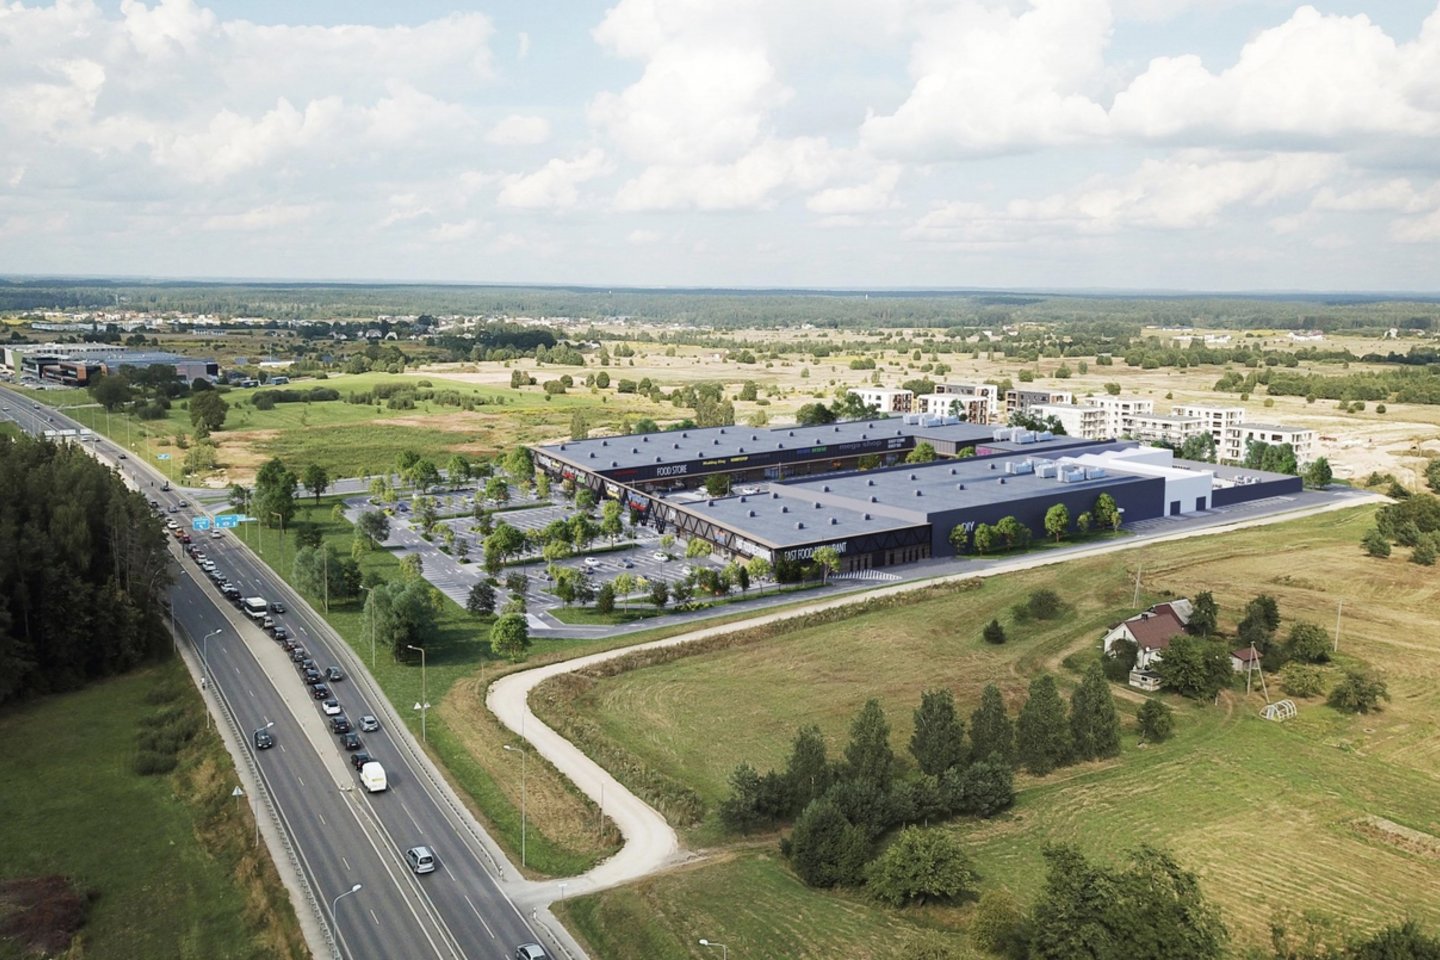 Vasario mėnesį Vilniaus miesto savivaldybėje svarstymui su visuomene pateikti nauji projektiniai siūlymai. Juose pristatomi nauja prekybos centro šalia Molėtų plento planai.<br>Vizual.